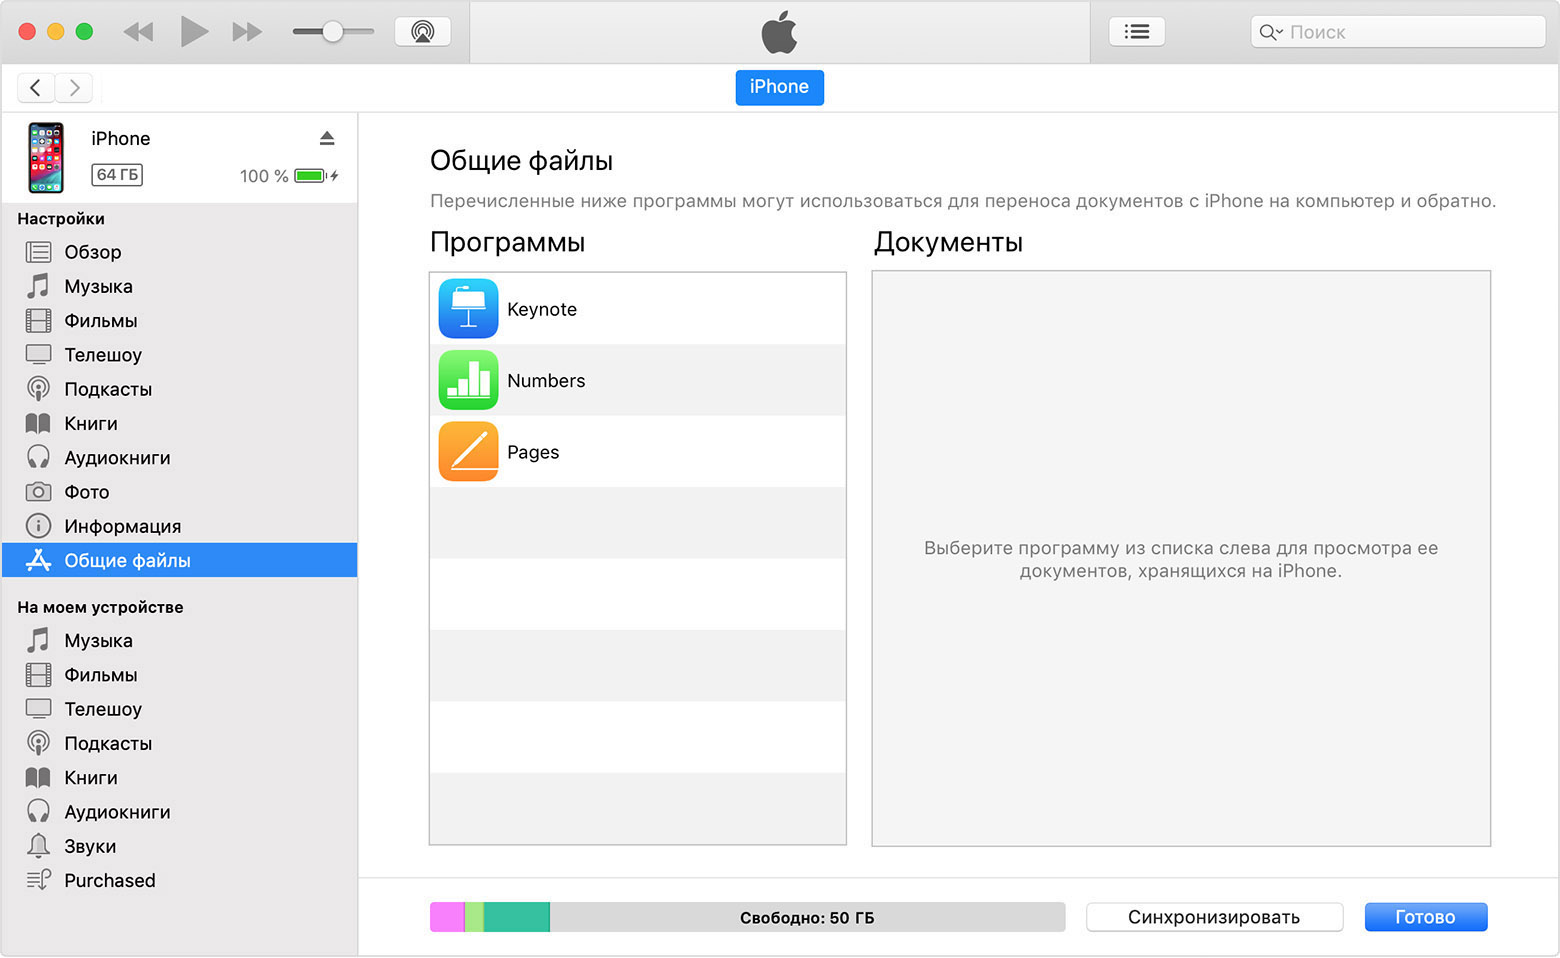 Окно iTunes с подключенным iPhone и выбранным в списке элементом «Общие файлы».